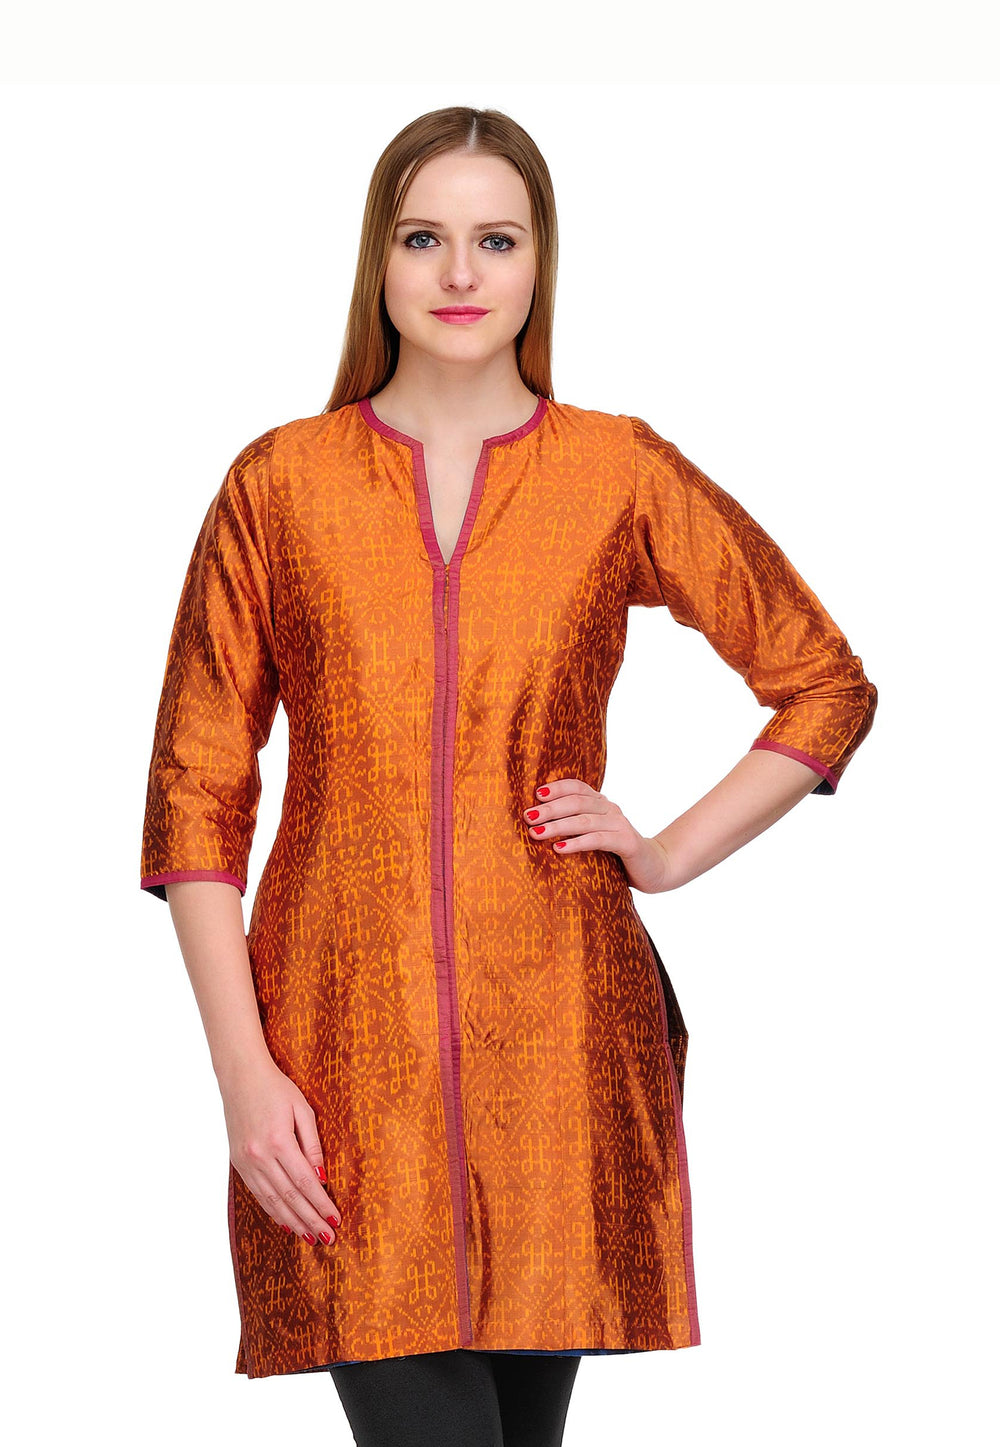 Orange Ikat Silk Jacket Style Tunic